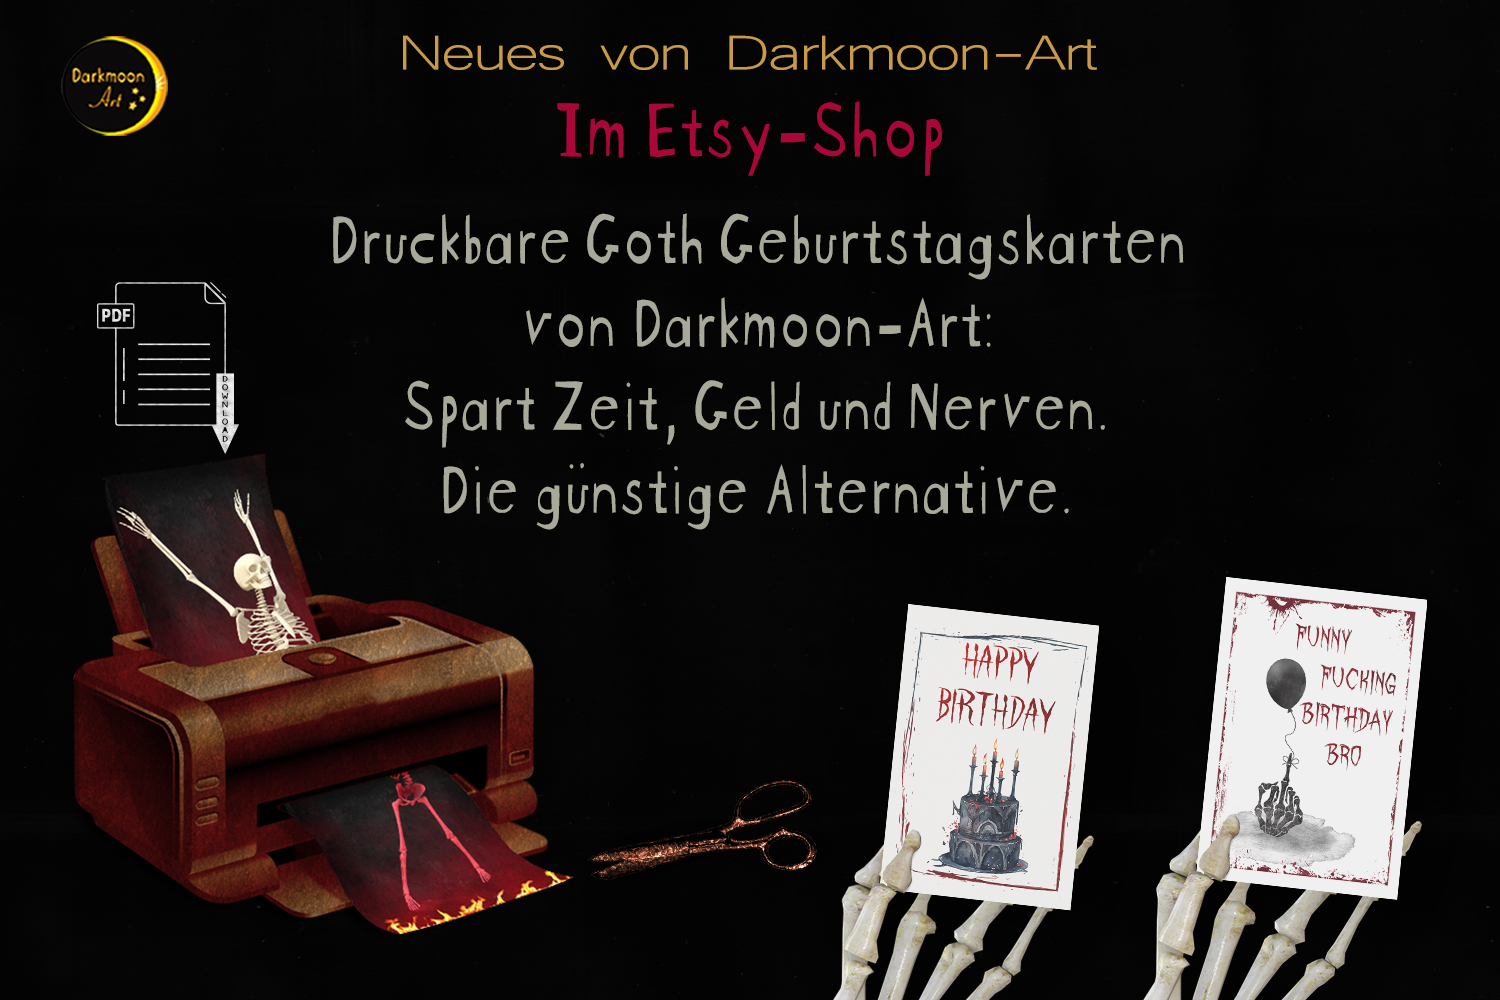 Druckbare Goth Geburtstagskarten von Darkmoon-Art: Spart Zeit, Geld und Nerven. Die günstige Alternative.